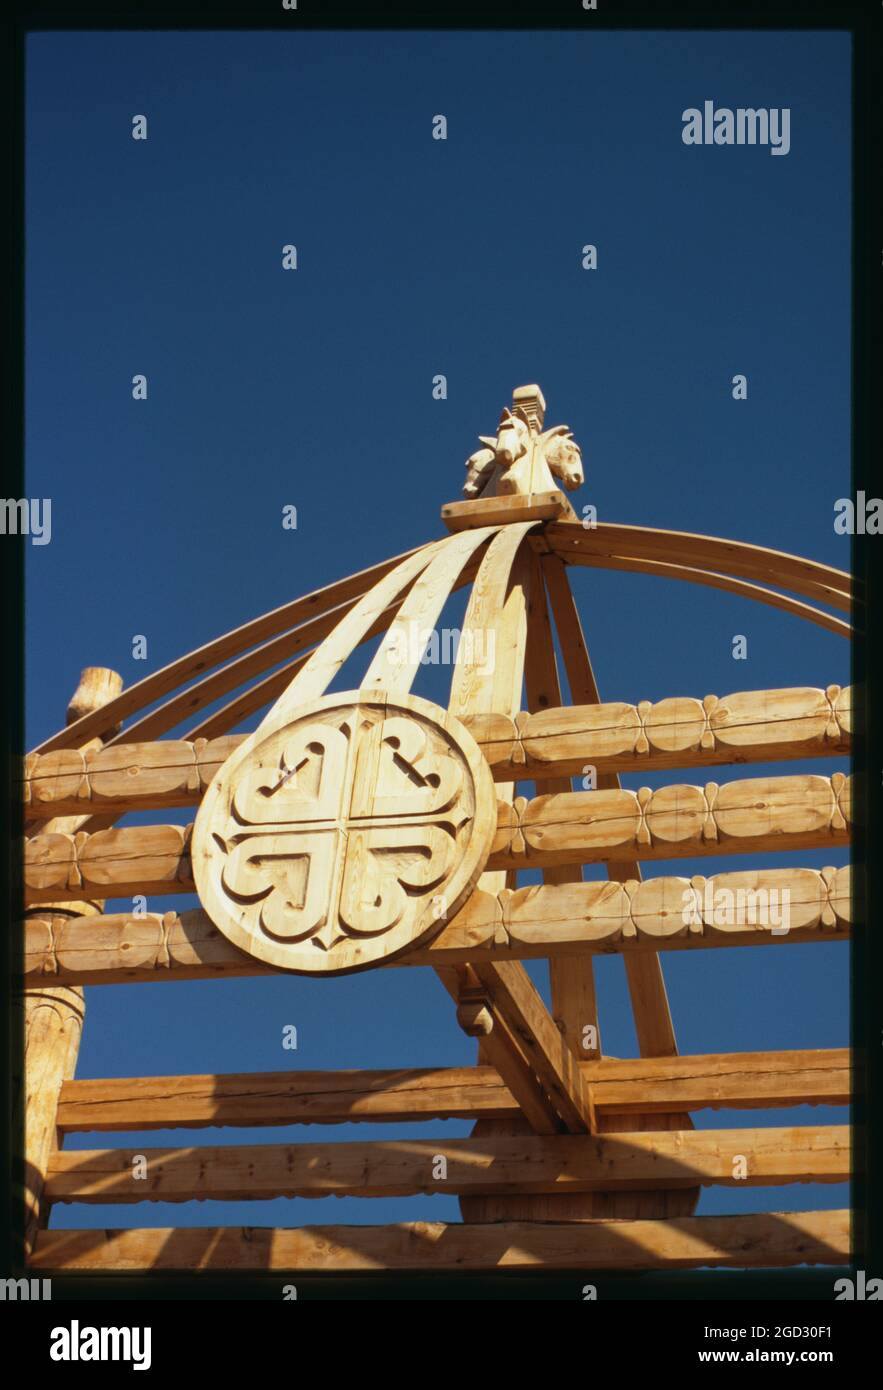 US-Chatyn-Festivalgelände, Haupttor (Detail), Bildhauer William Jakowlew, Jakutsk, Russland; 2002 Stockfoto